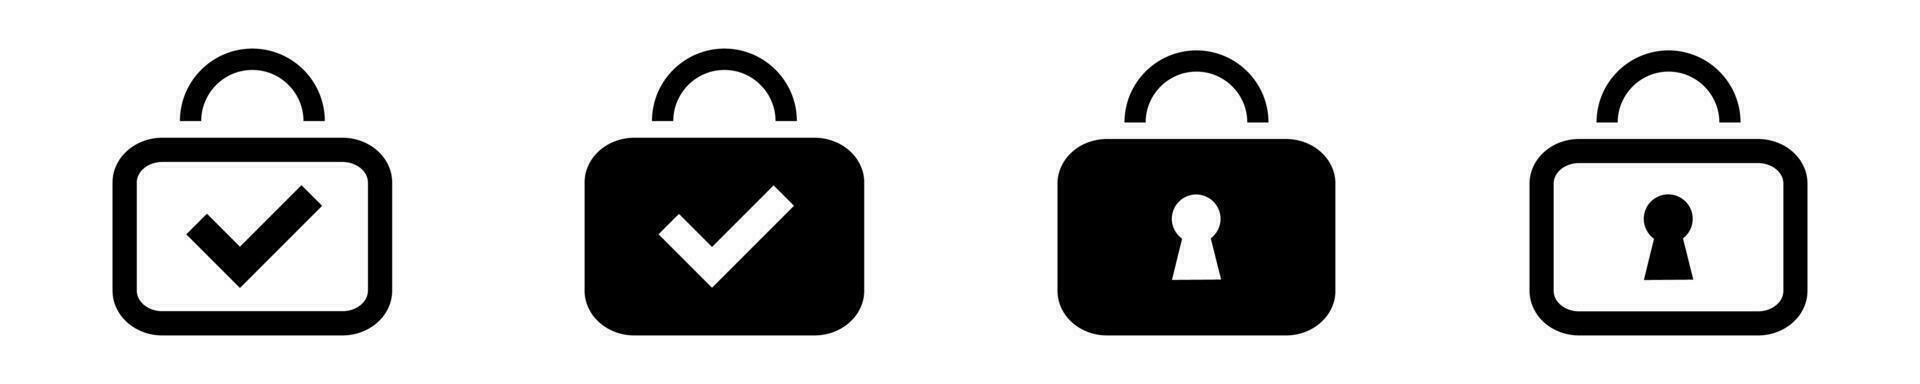 bloquear seguridad vector icono. proteccion símbolo